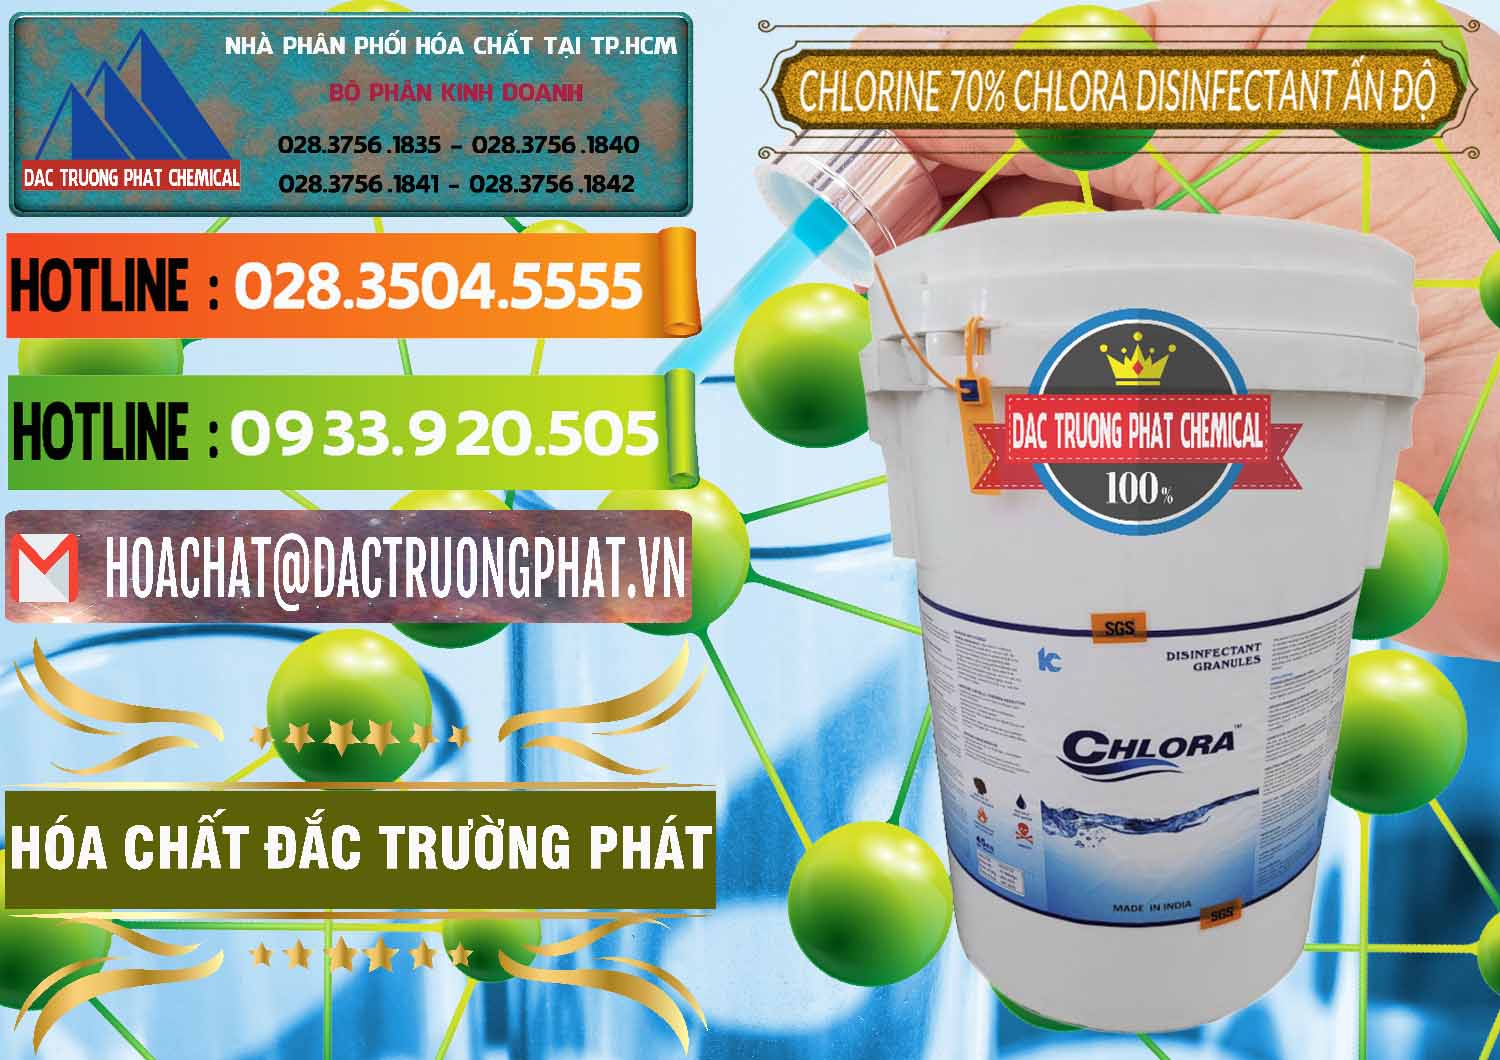 Chuyên phân phối ( bán ) Chlorine – Clorin 70% Chlora Disinfectant Ấn Độ India - 0213 - Nhà phân phối - cung ứng hóa chất tại TP.HCM - cungcaphoachat.com.vn